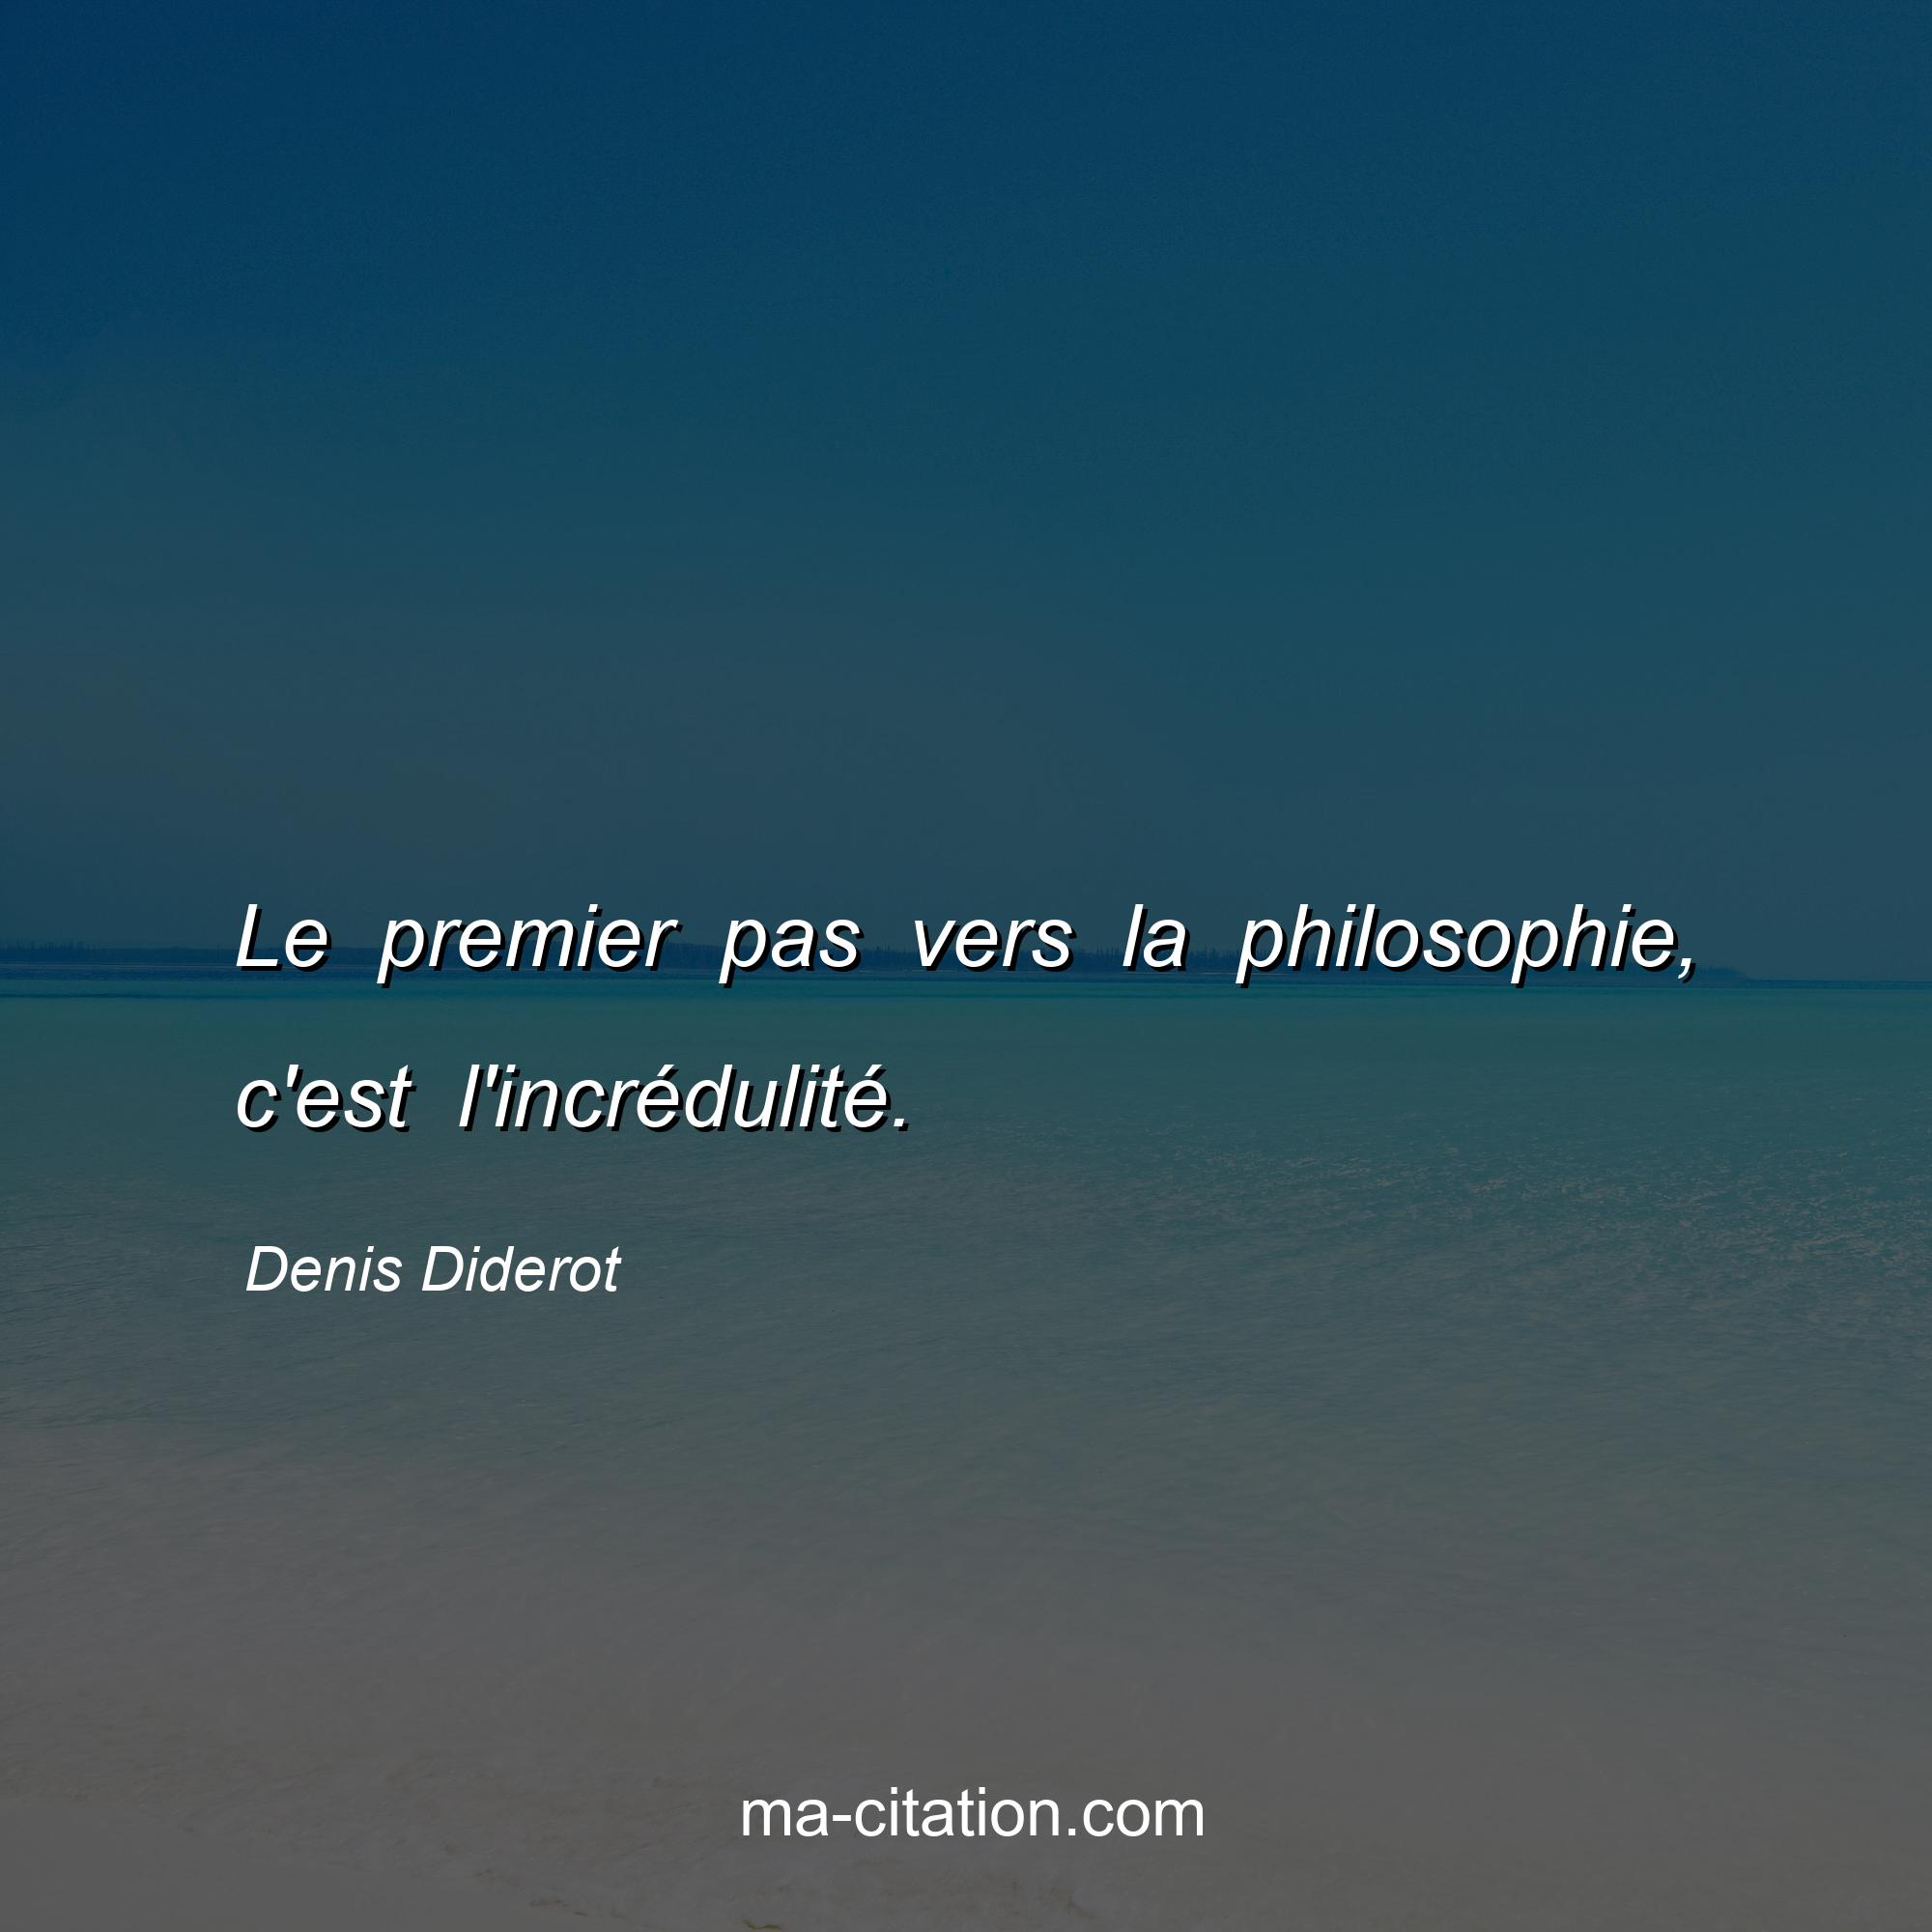 Denis Diderot : Le premier pas vers la philosophie, c'est l'incrédulité.